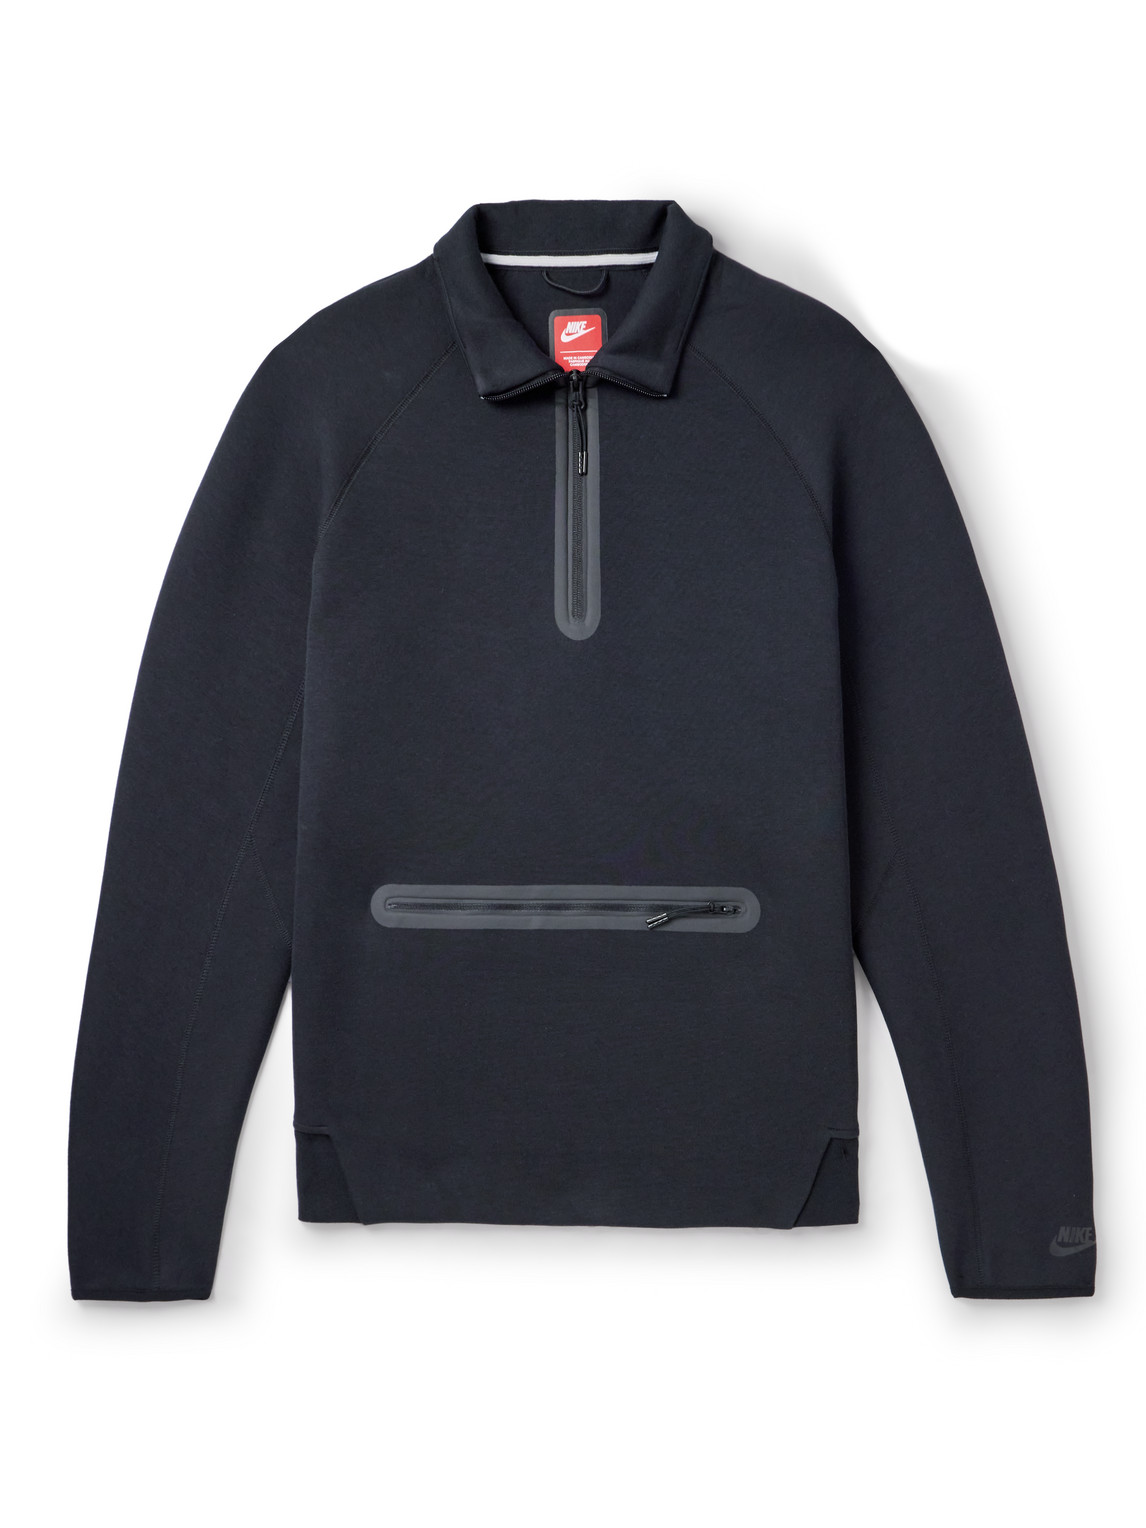 Nike - Cotton-Blend Jersey Half-Zip Sweatshirt - Men - Black - XS von Nike